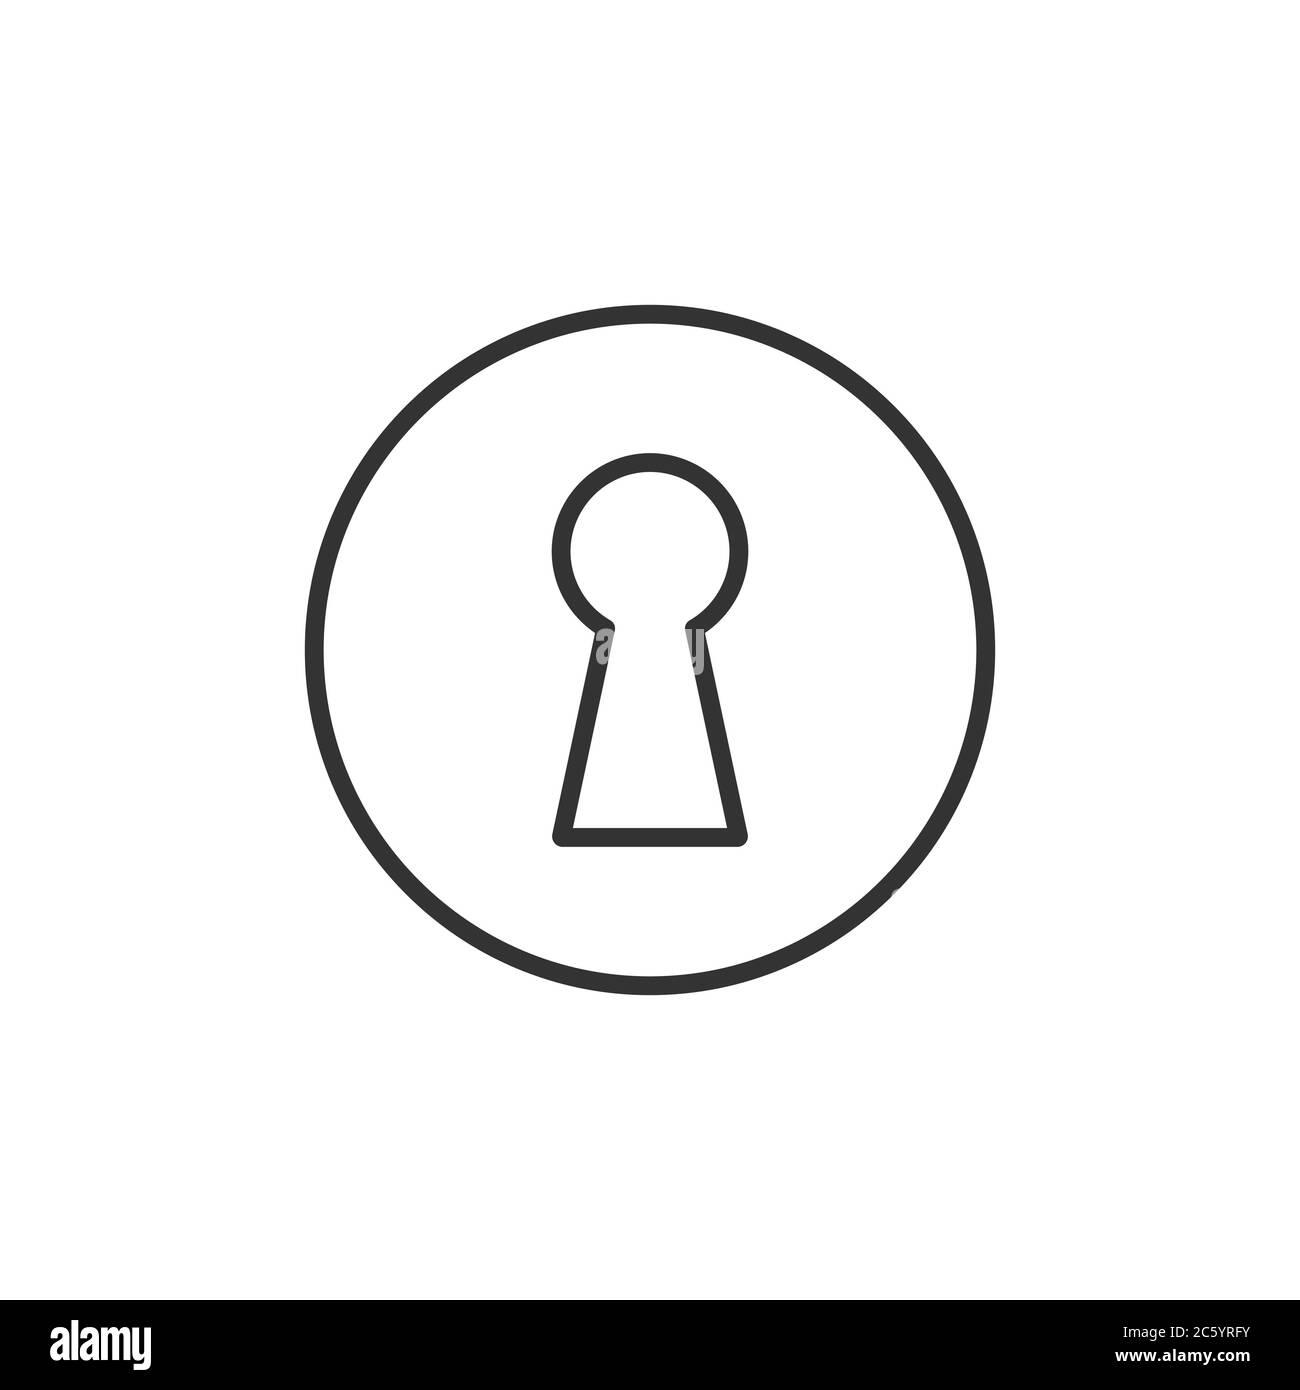 Keyhole icon shape. Safety lock logo symbol sign. Vector illustration image. Isolated on white background. Stock Vector